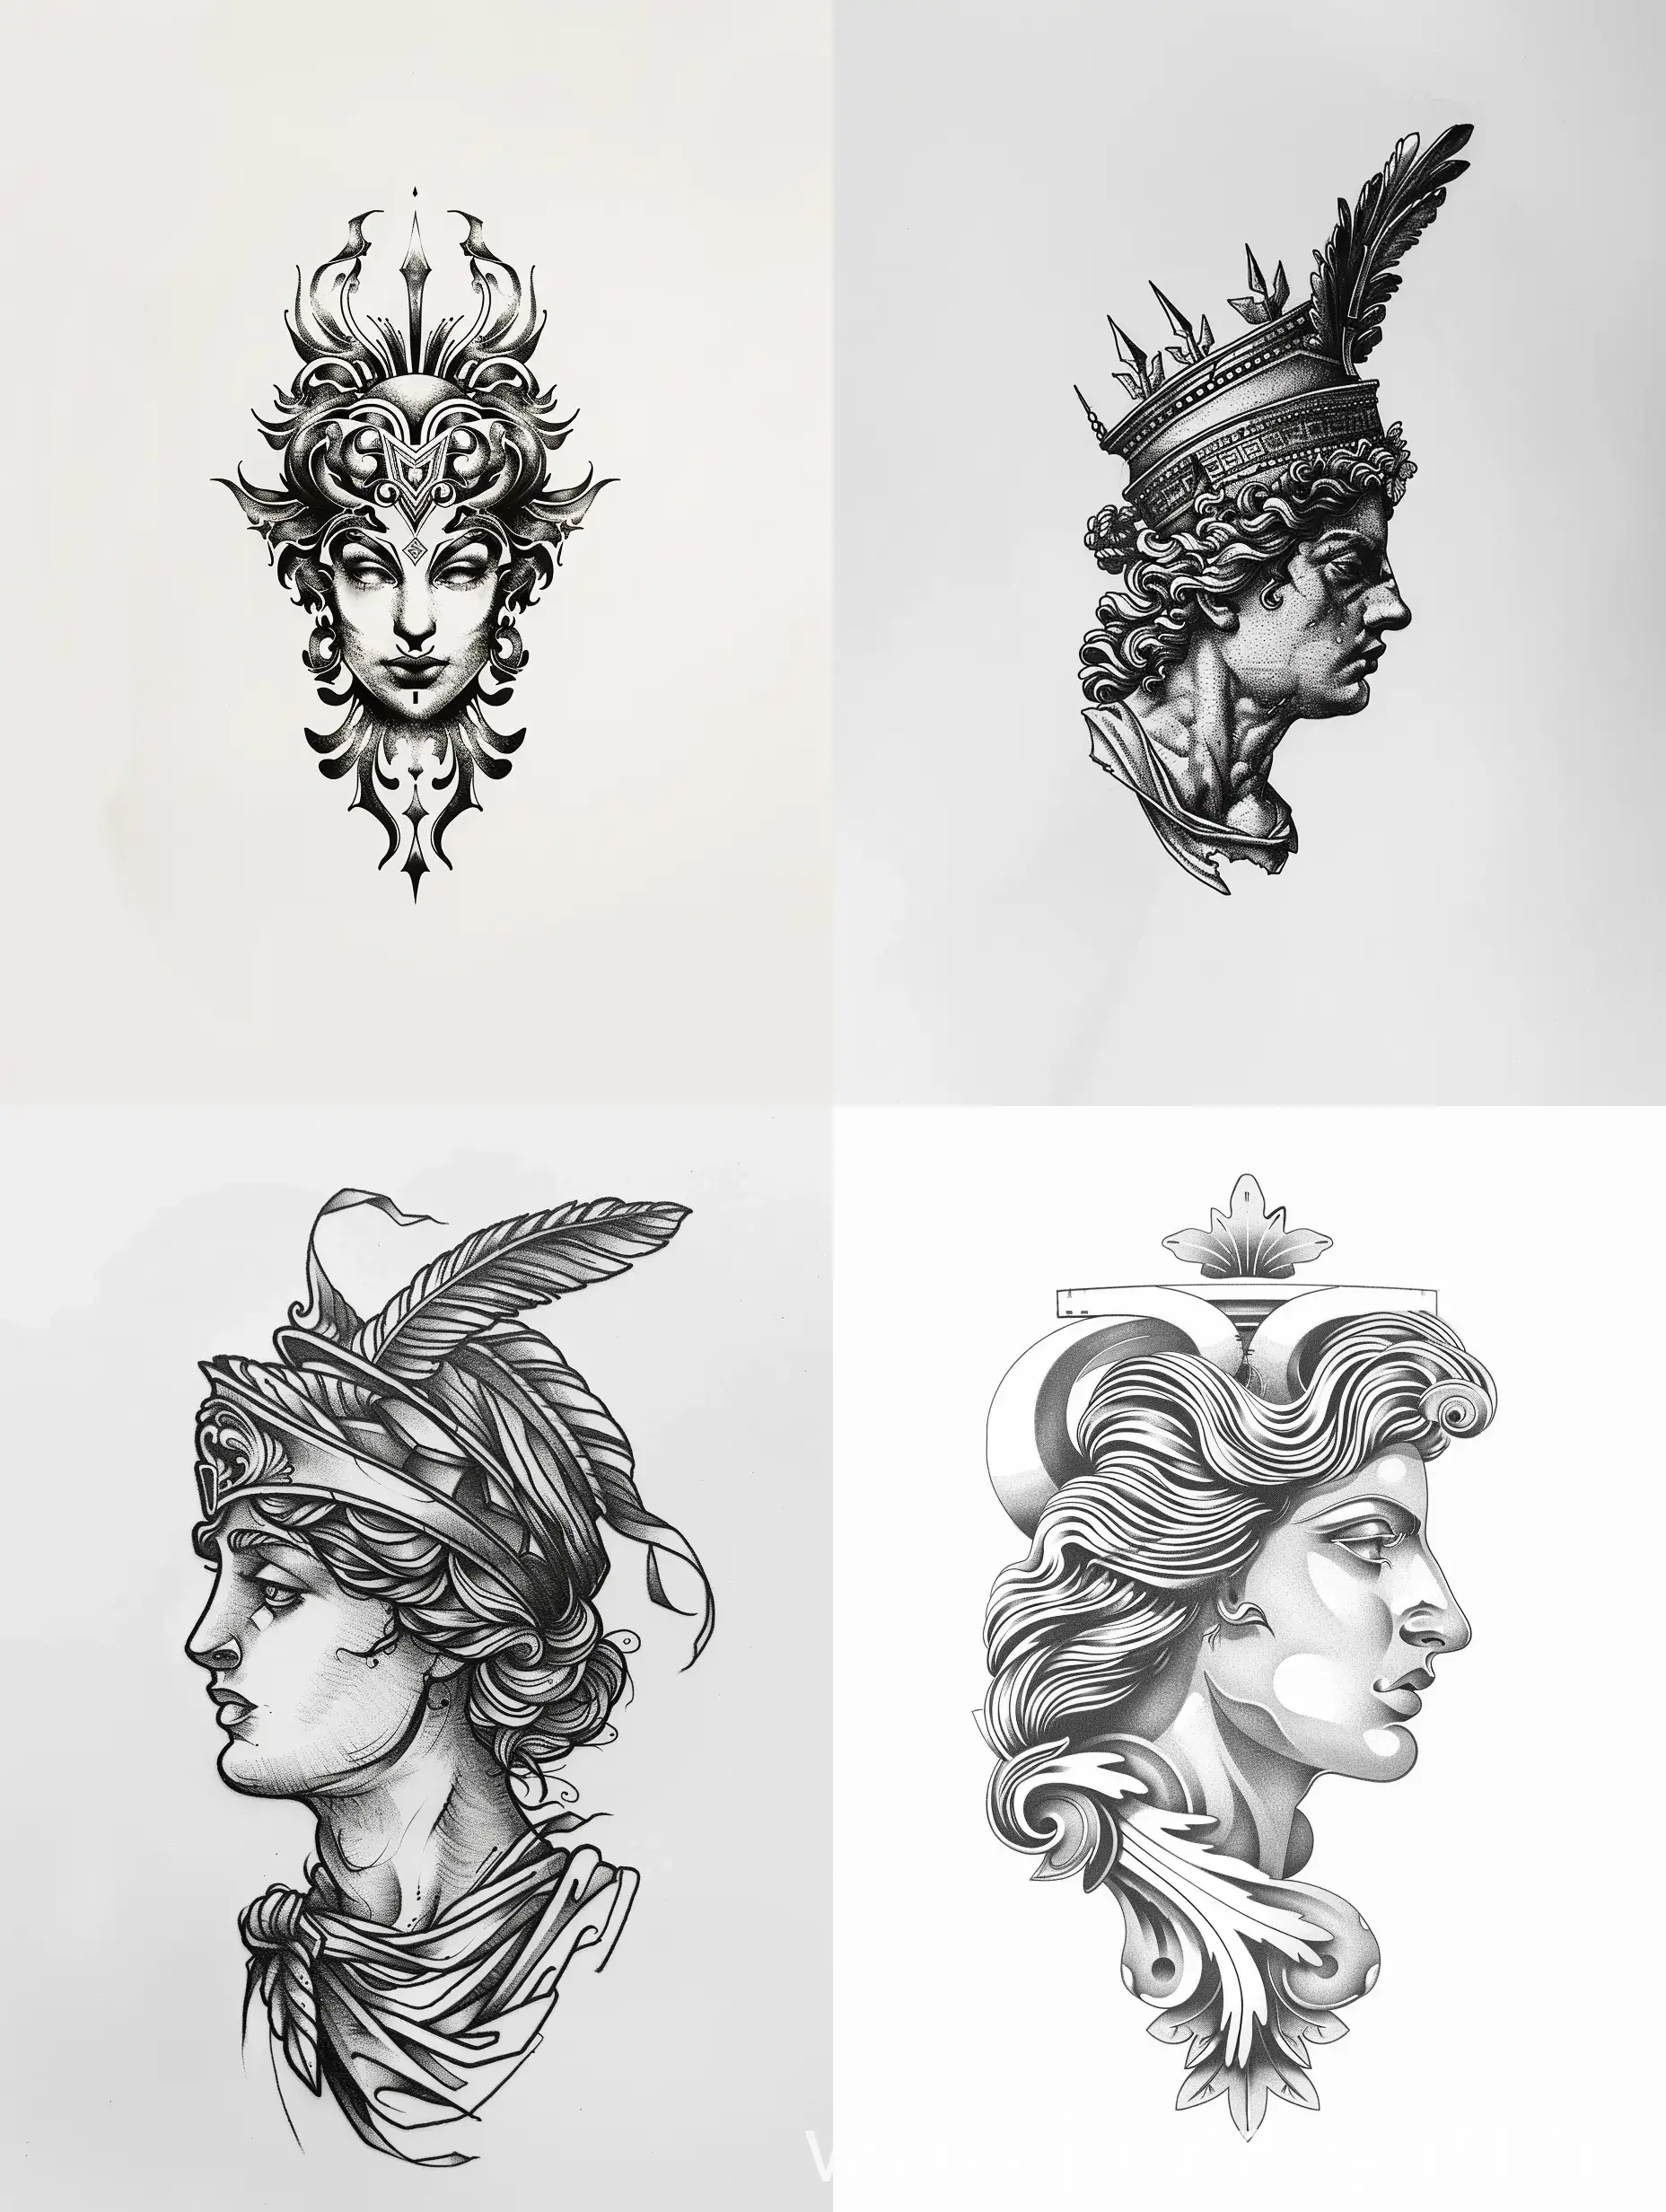 minimalist greek mythology, Hera tattoo design sketch, white background, symmetry

